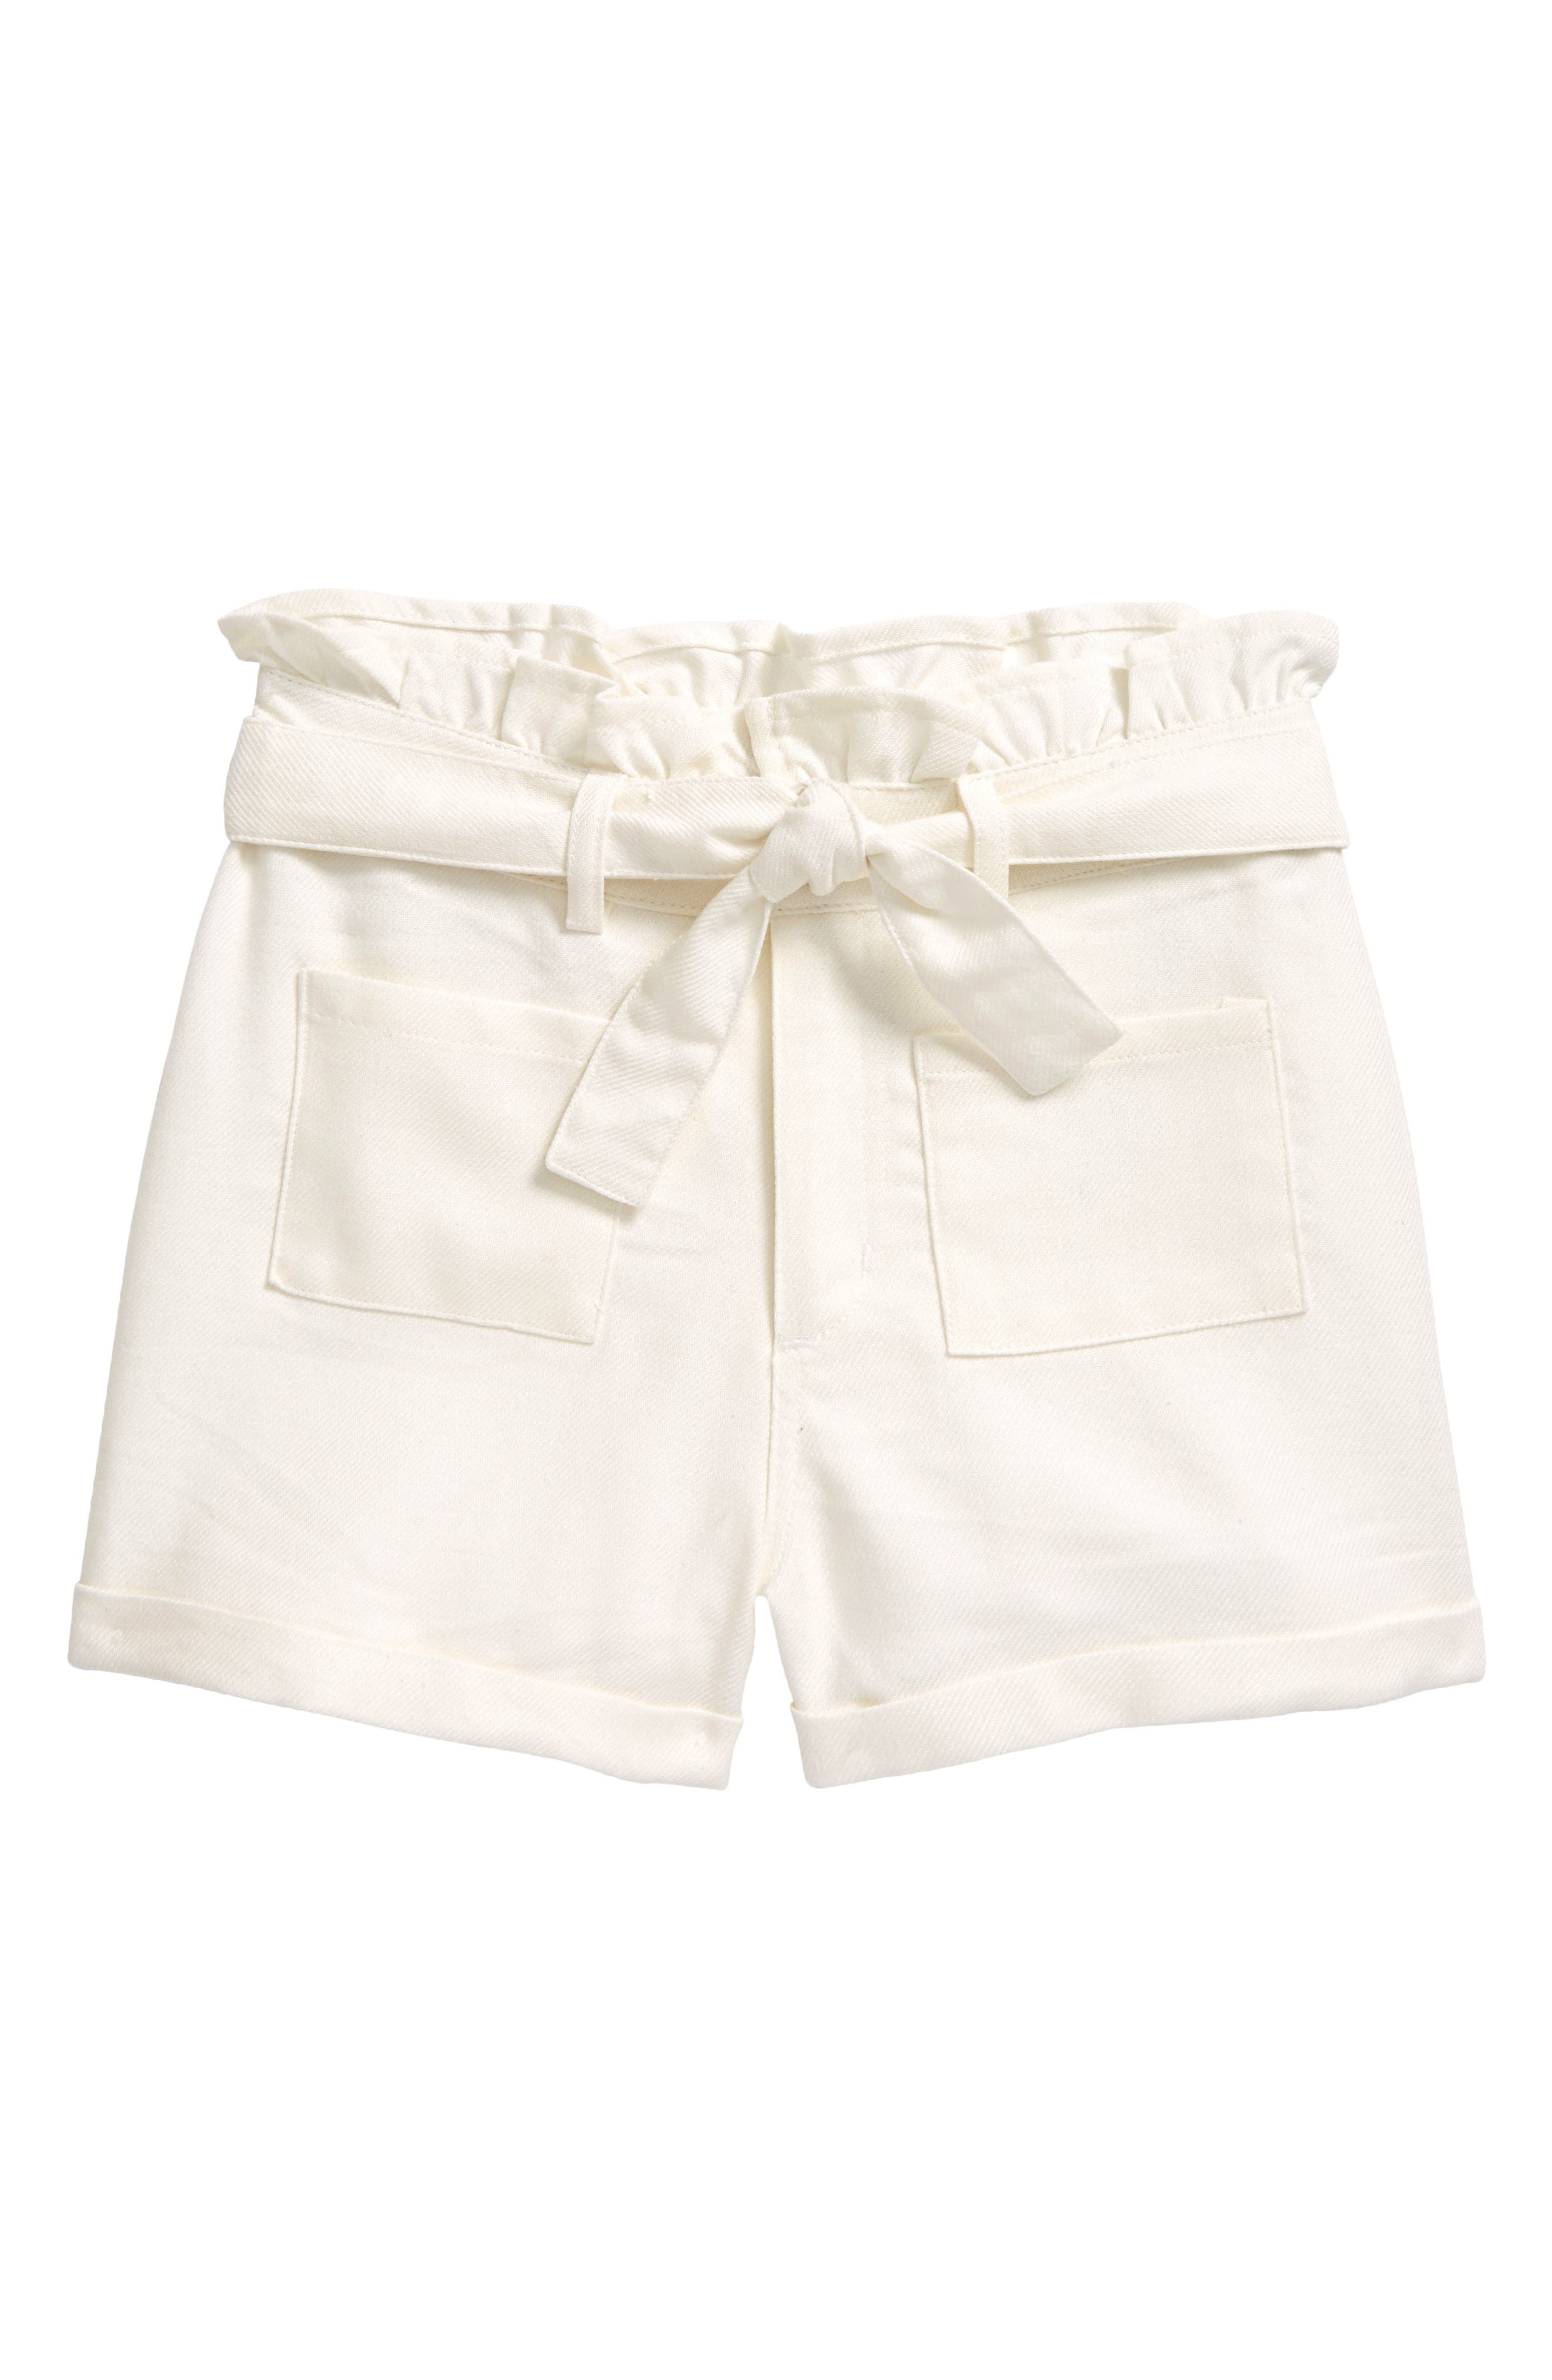 white shorts for girl